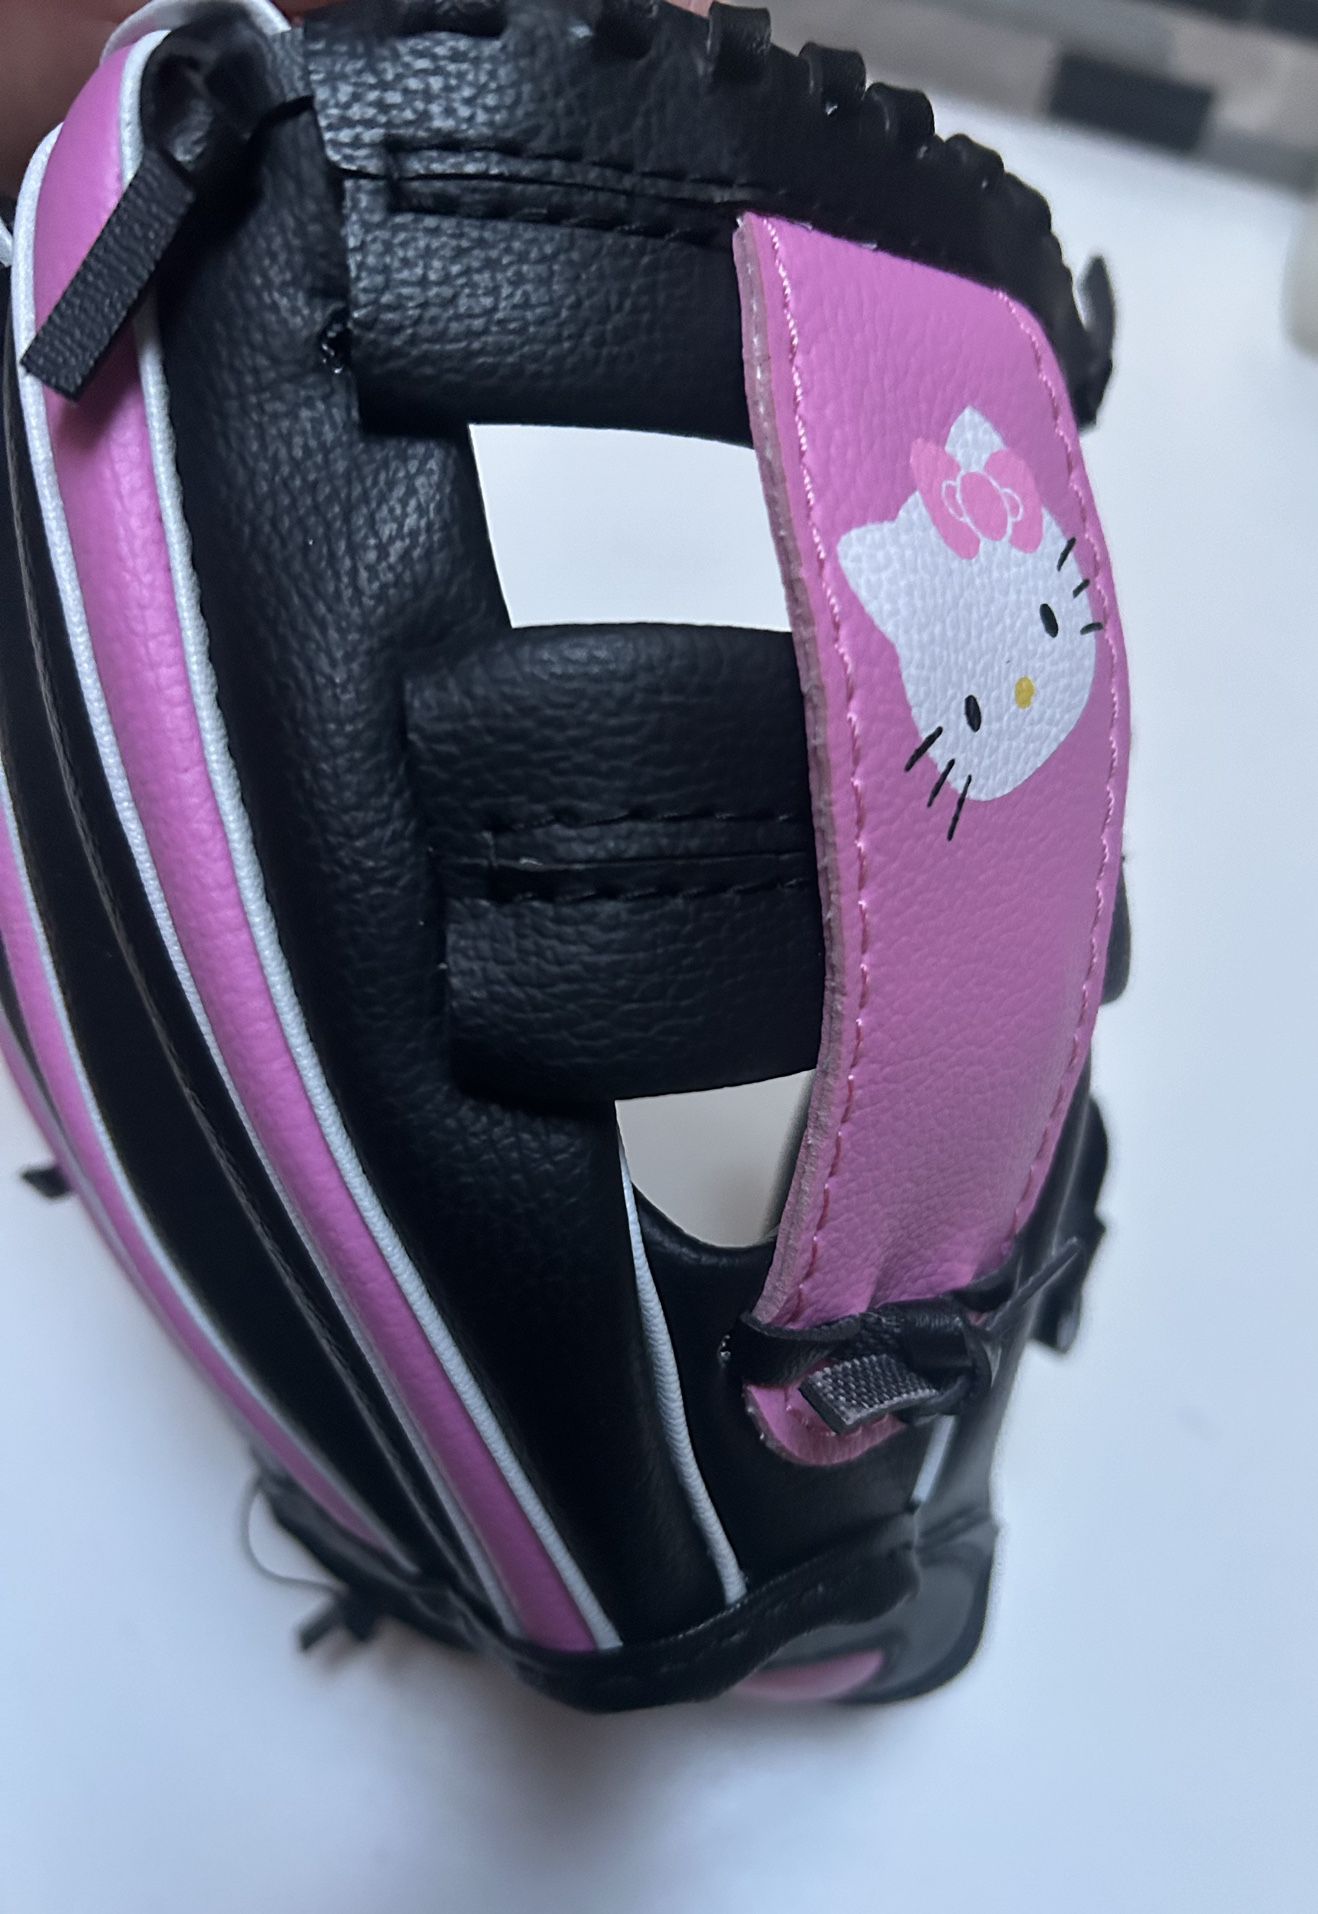 Sanrio Hello Kitty Girls Softball Glove Mitt 